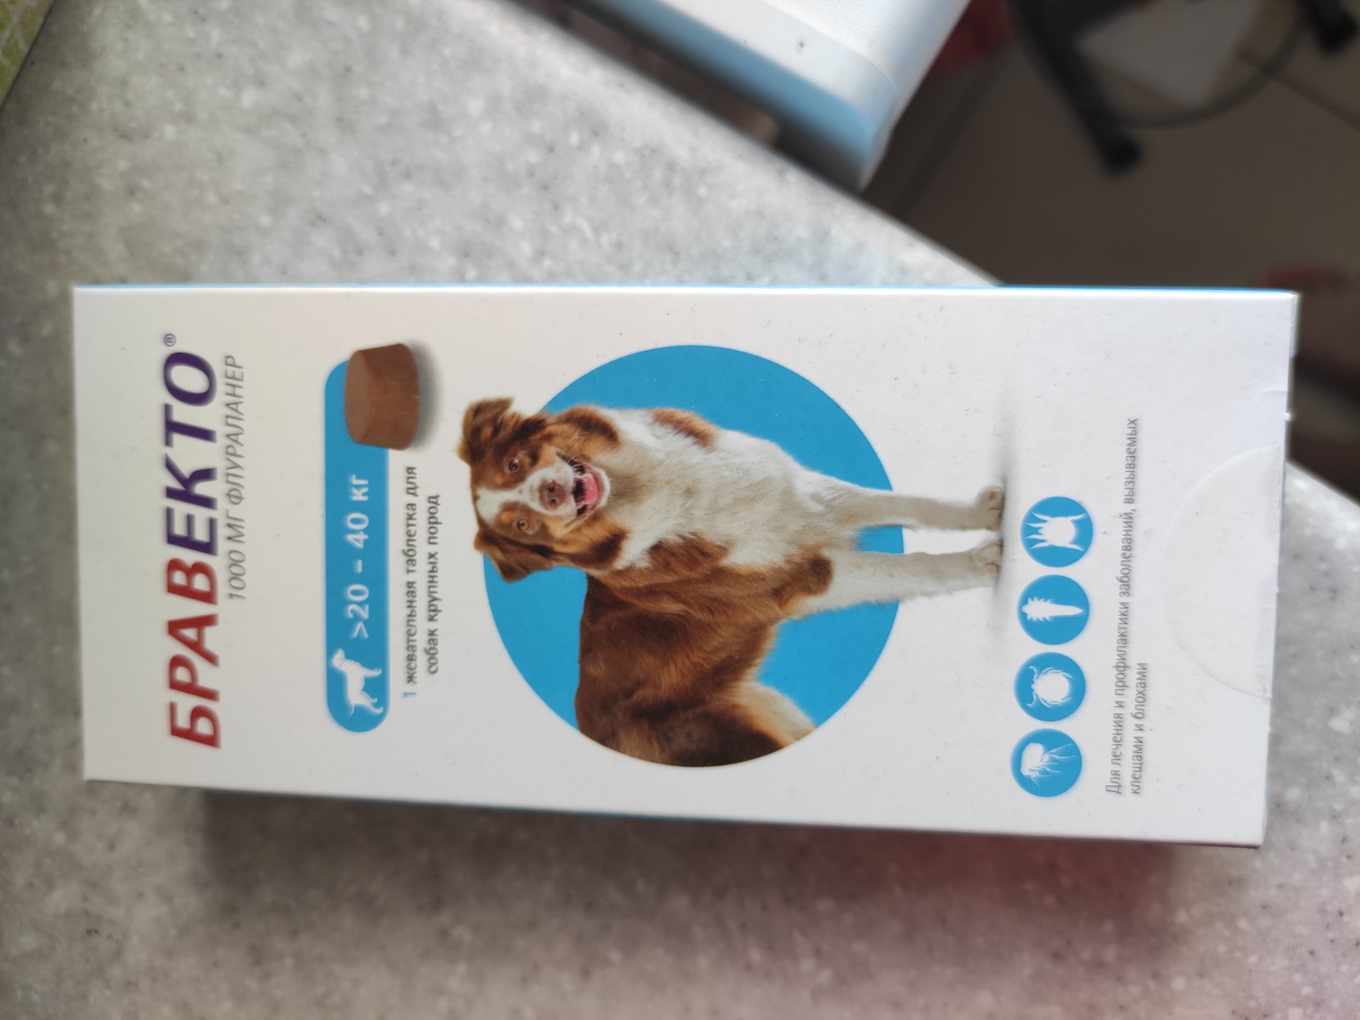 Бравекто купить рязань. Бравекто для собак 20-40 кг таблетки. Bravecto для собак 20-40кг таблетки. Бравекто от клещей для собак 40 кг. Флураланер Бравекто 1000 мг для собак 20-40 кг.